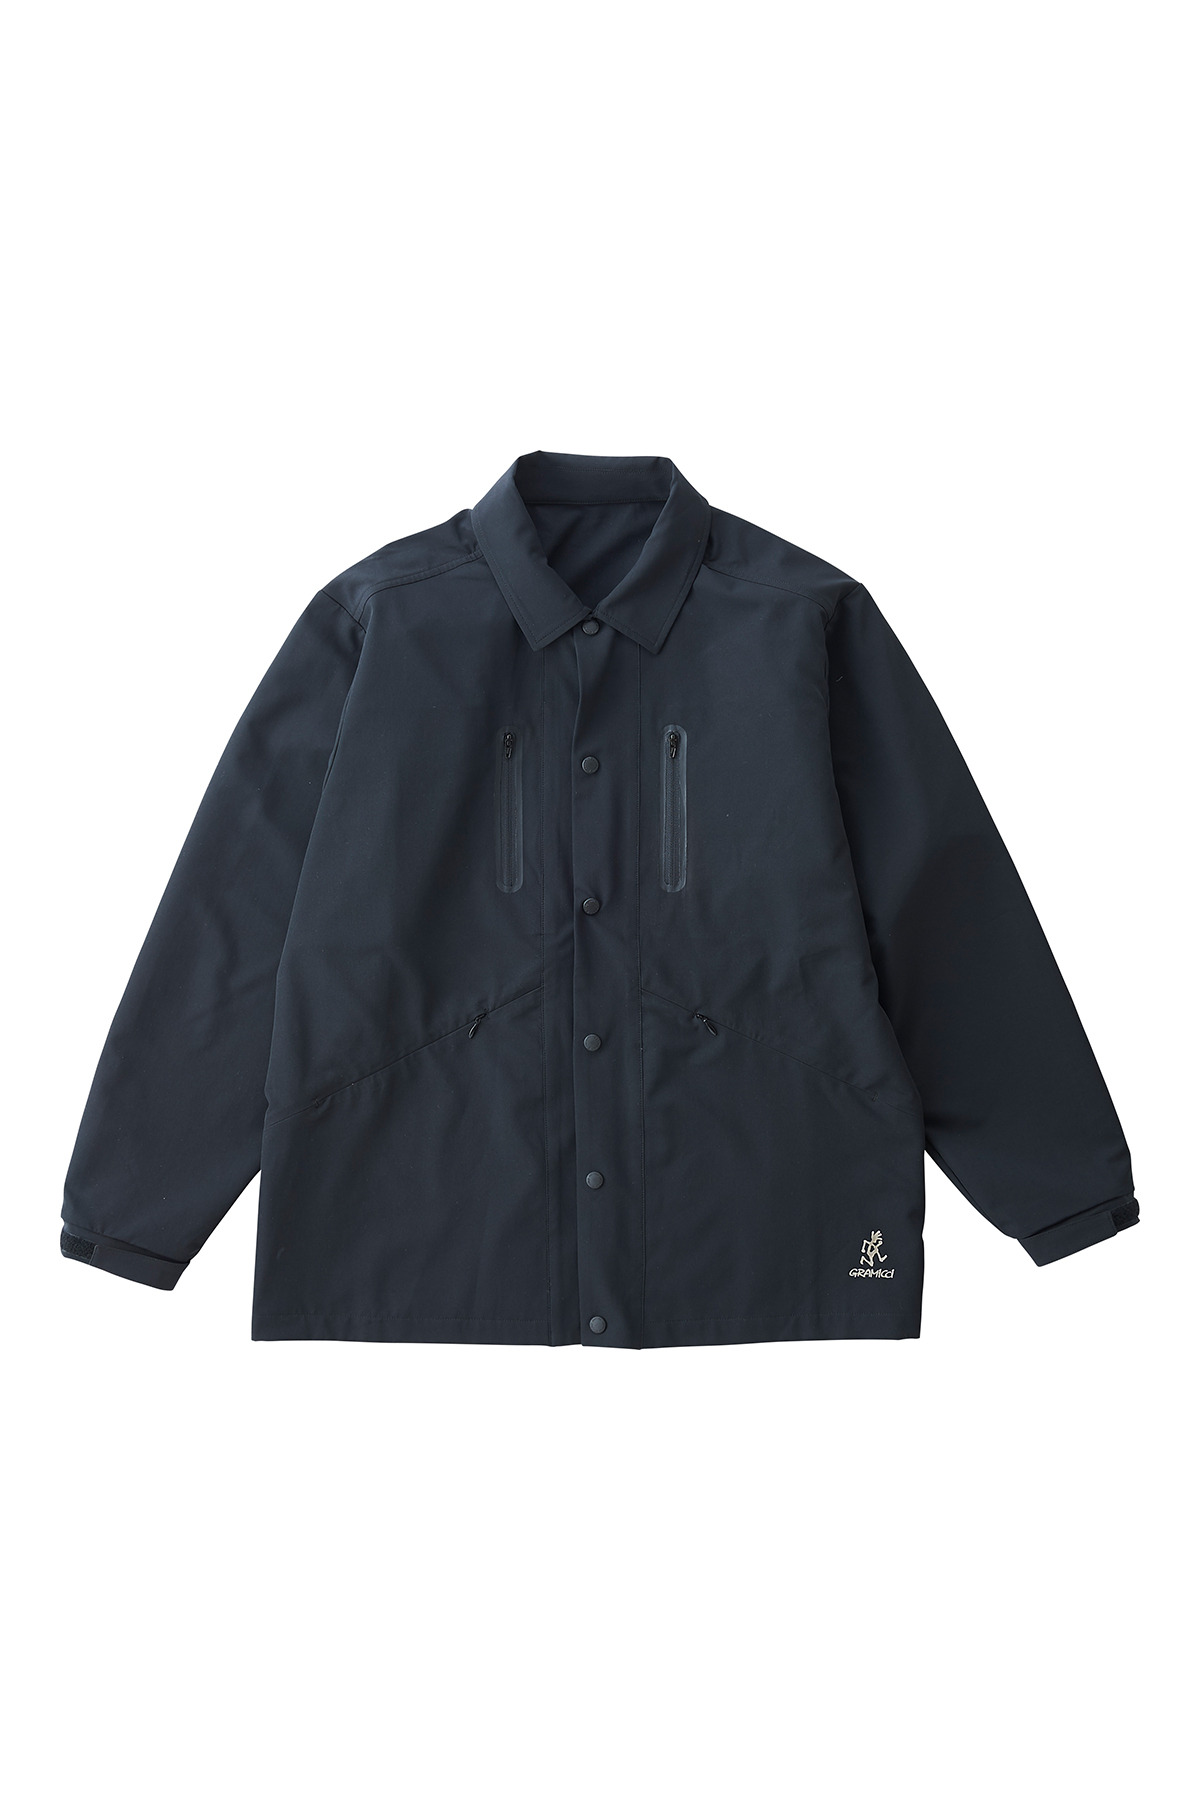 그라미치 쉘테크x리뉴 테크 셔츠 자켓 블랙